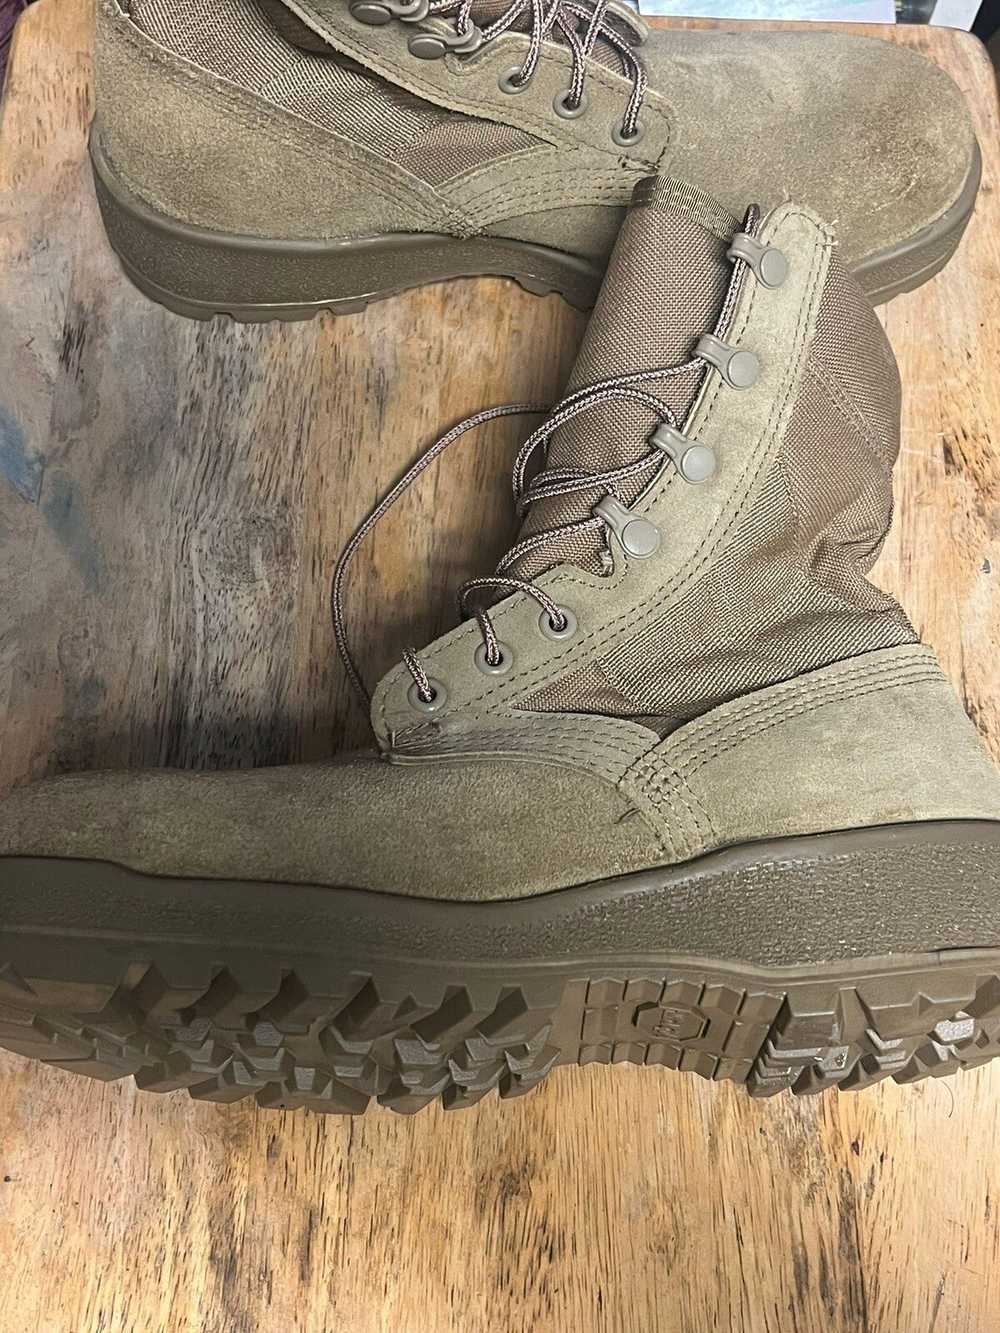 Altama Altama Gore-tex Combat Boots Size 7w SPE1C… - image 4